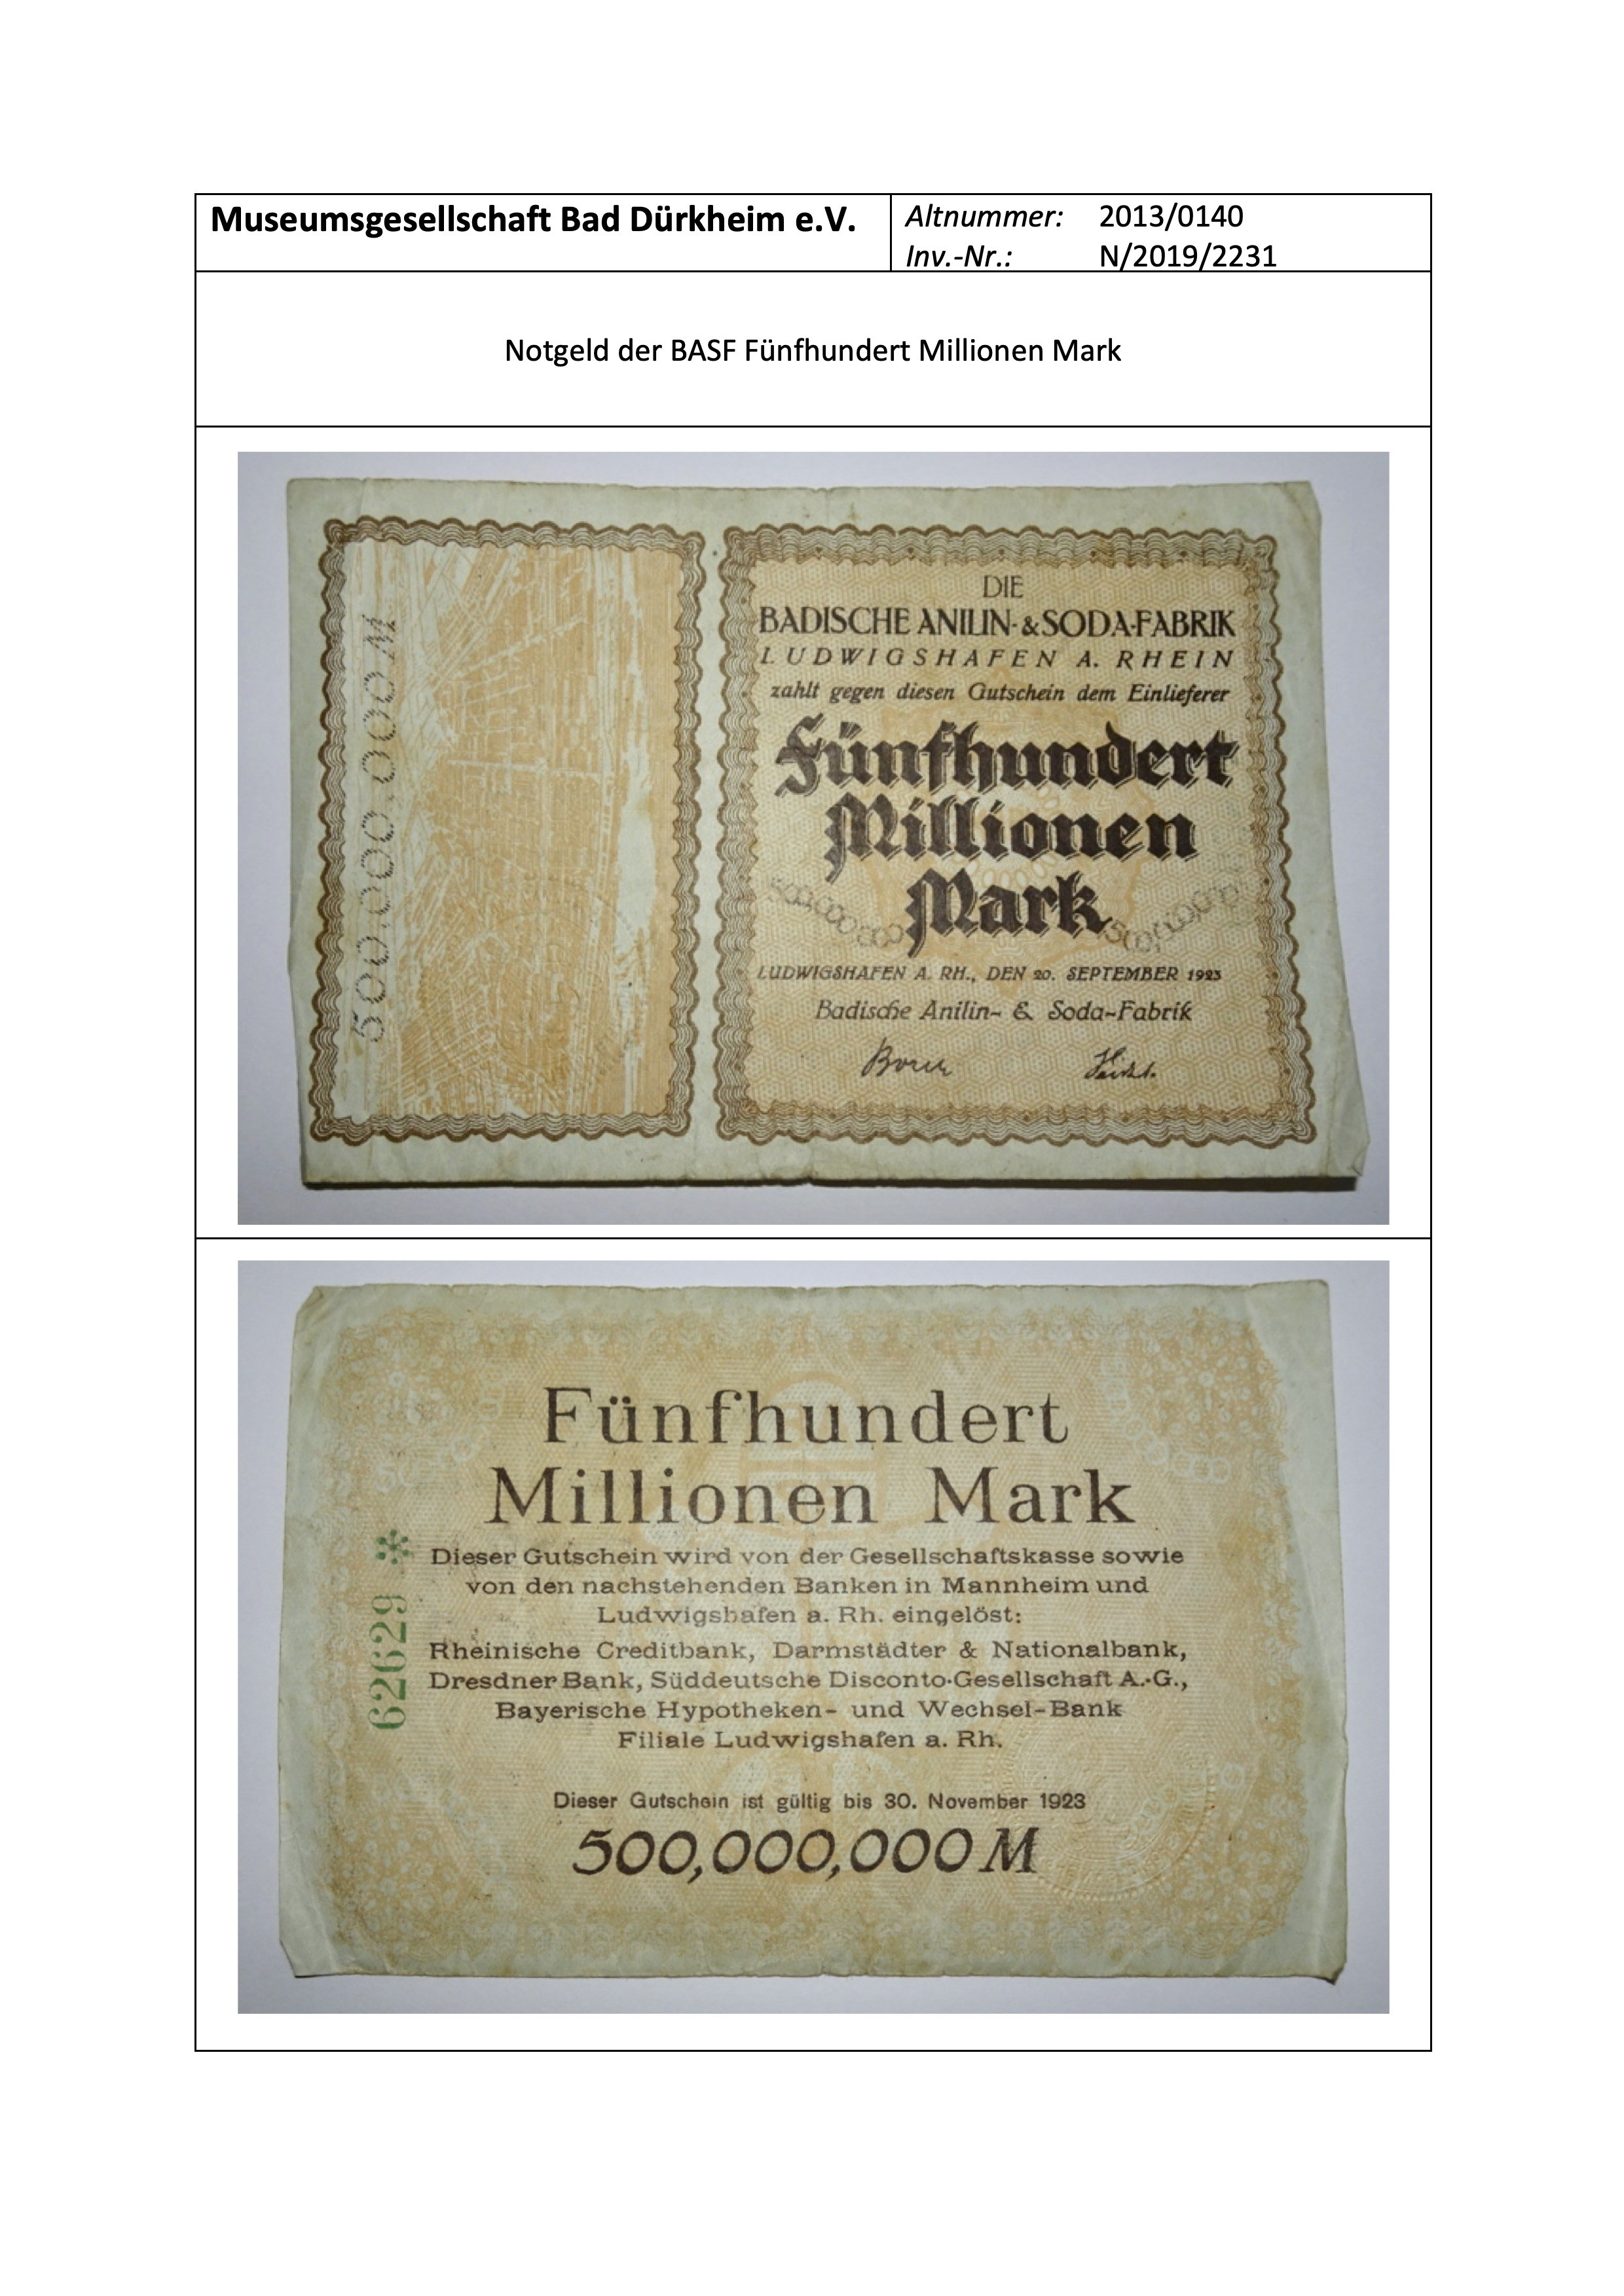 Notgeld Gutschein der BASF fünfhundert Millionen Mark (Museumsgesellschaft Bad Dürkheim e.V. CC BY-NC-SA)